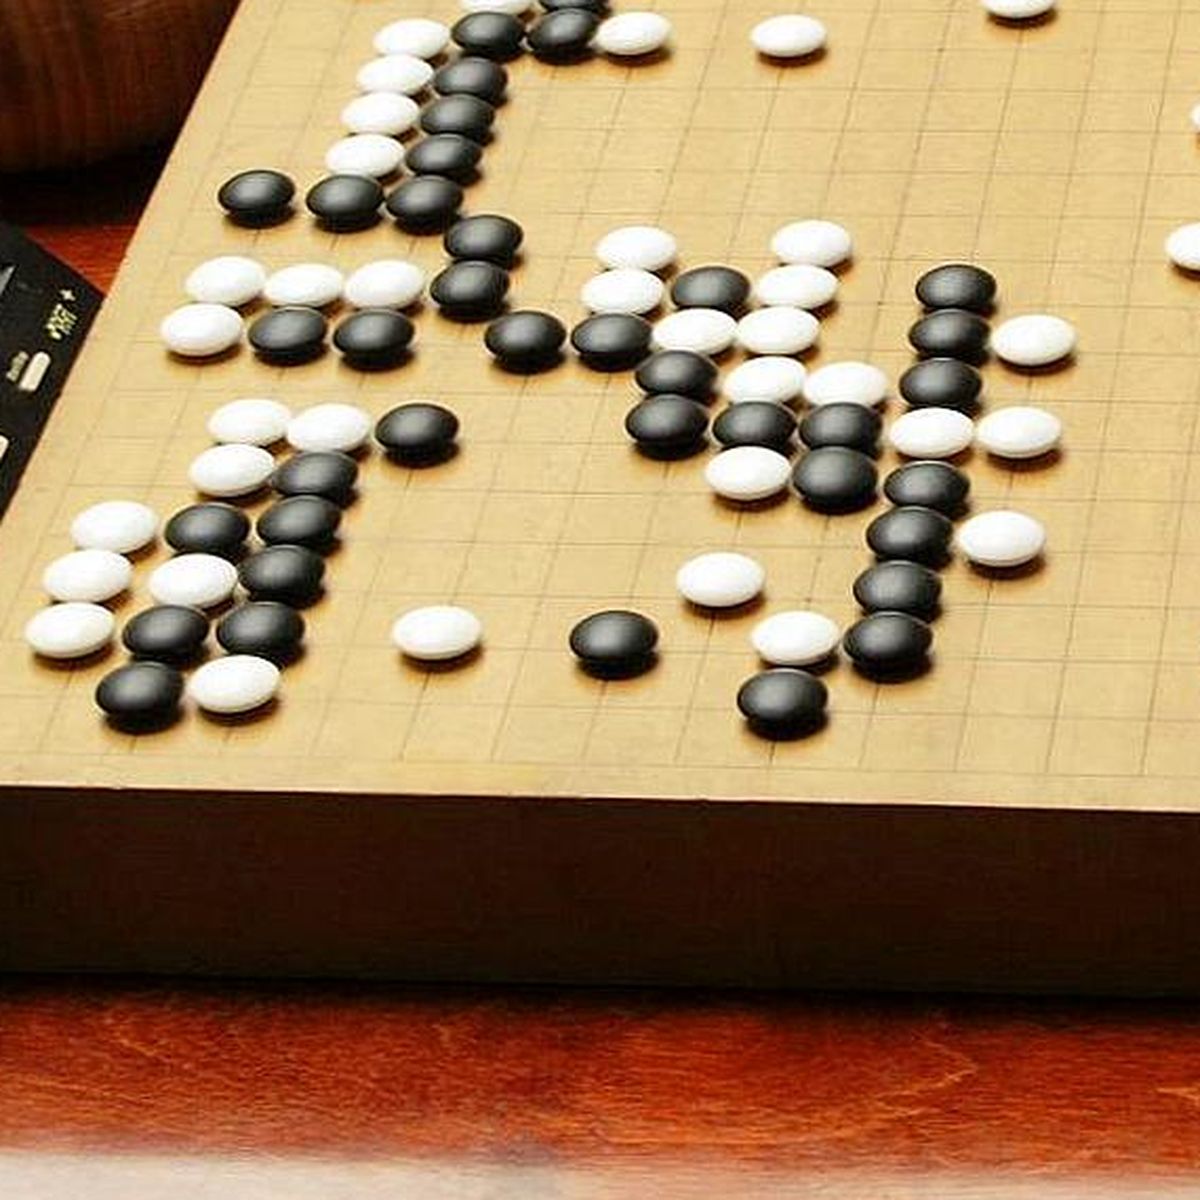 AlphaGo, inteligência artificial do Google, vence desafio de go